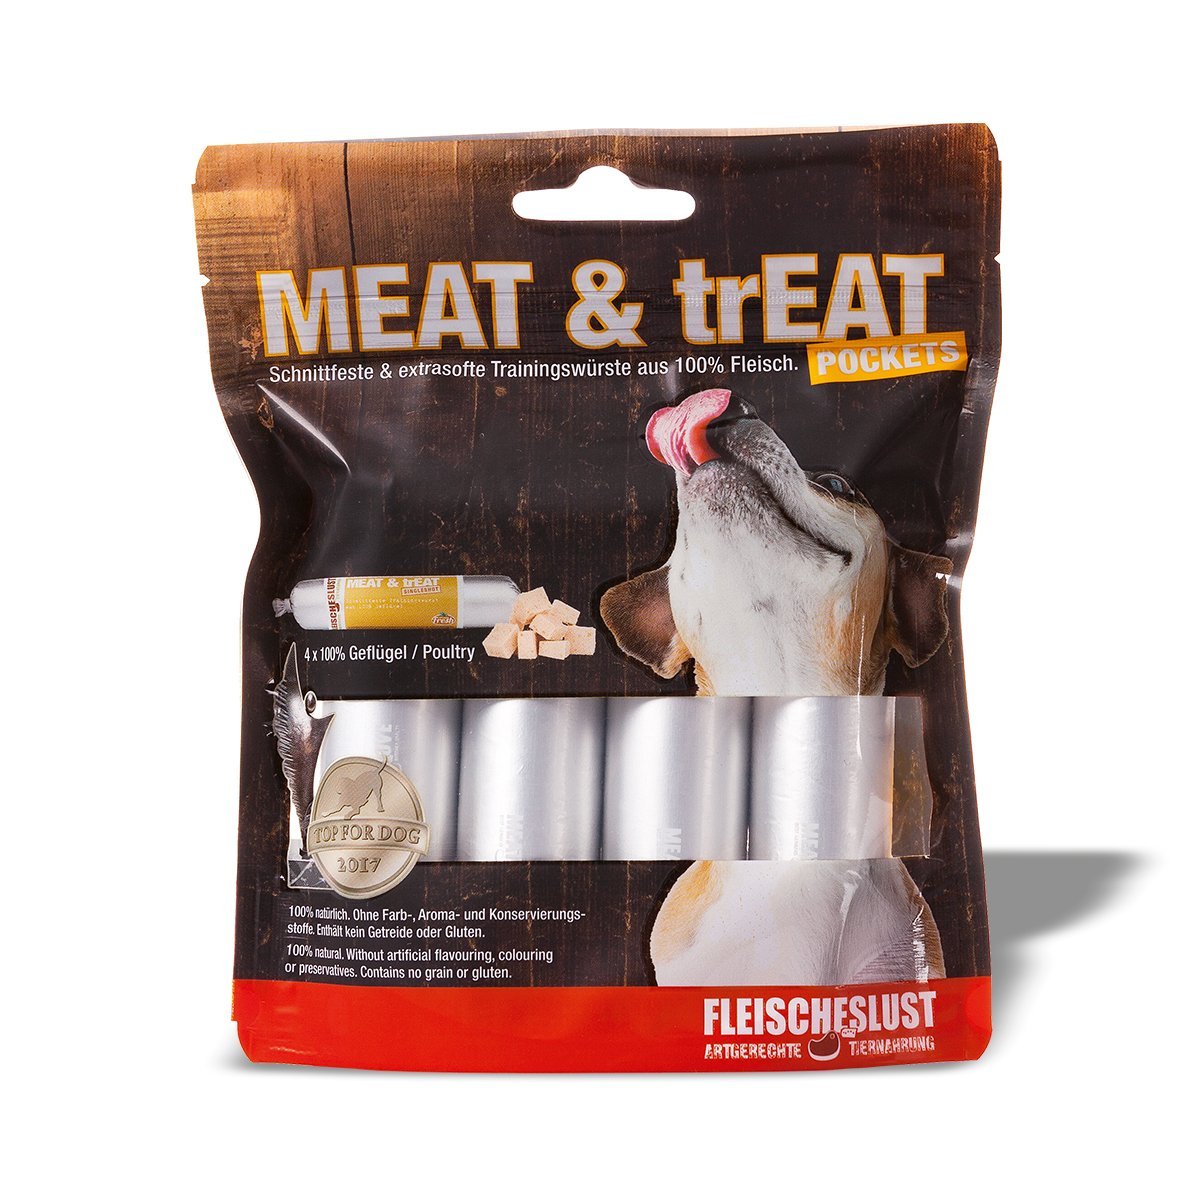 Meat & Treat Pocket Gefluegel